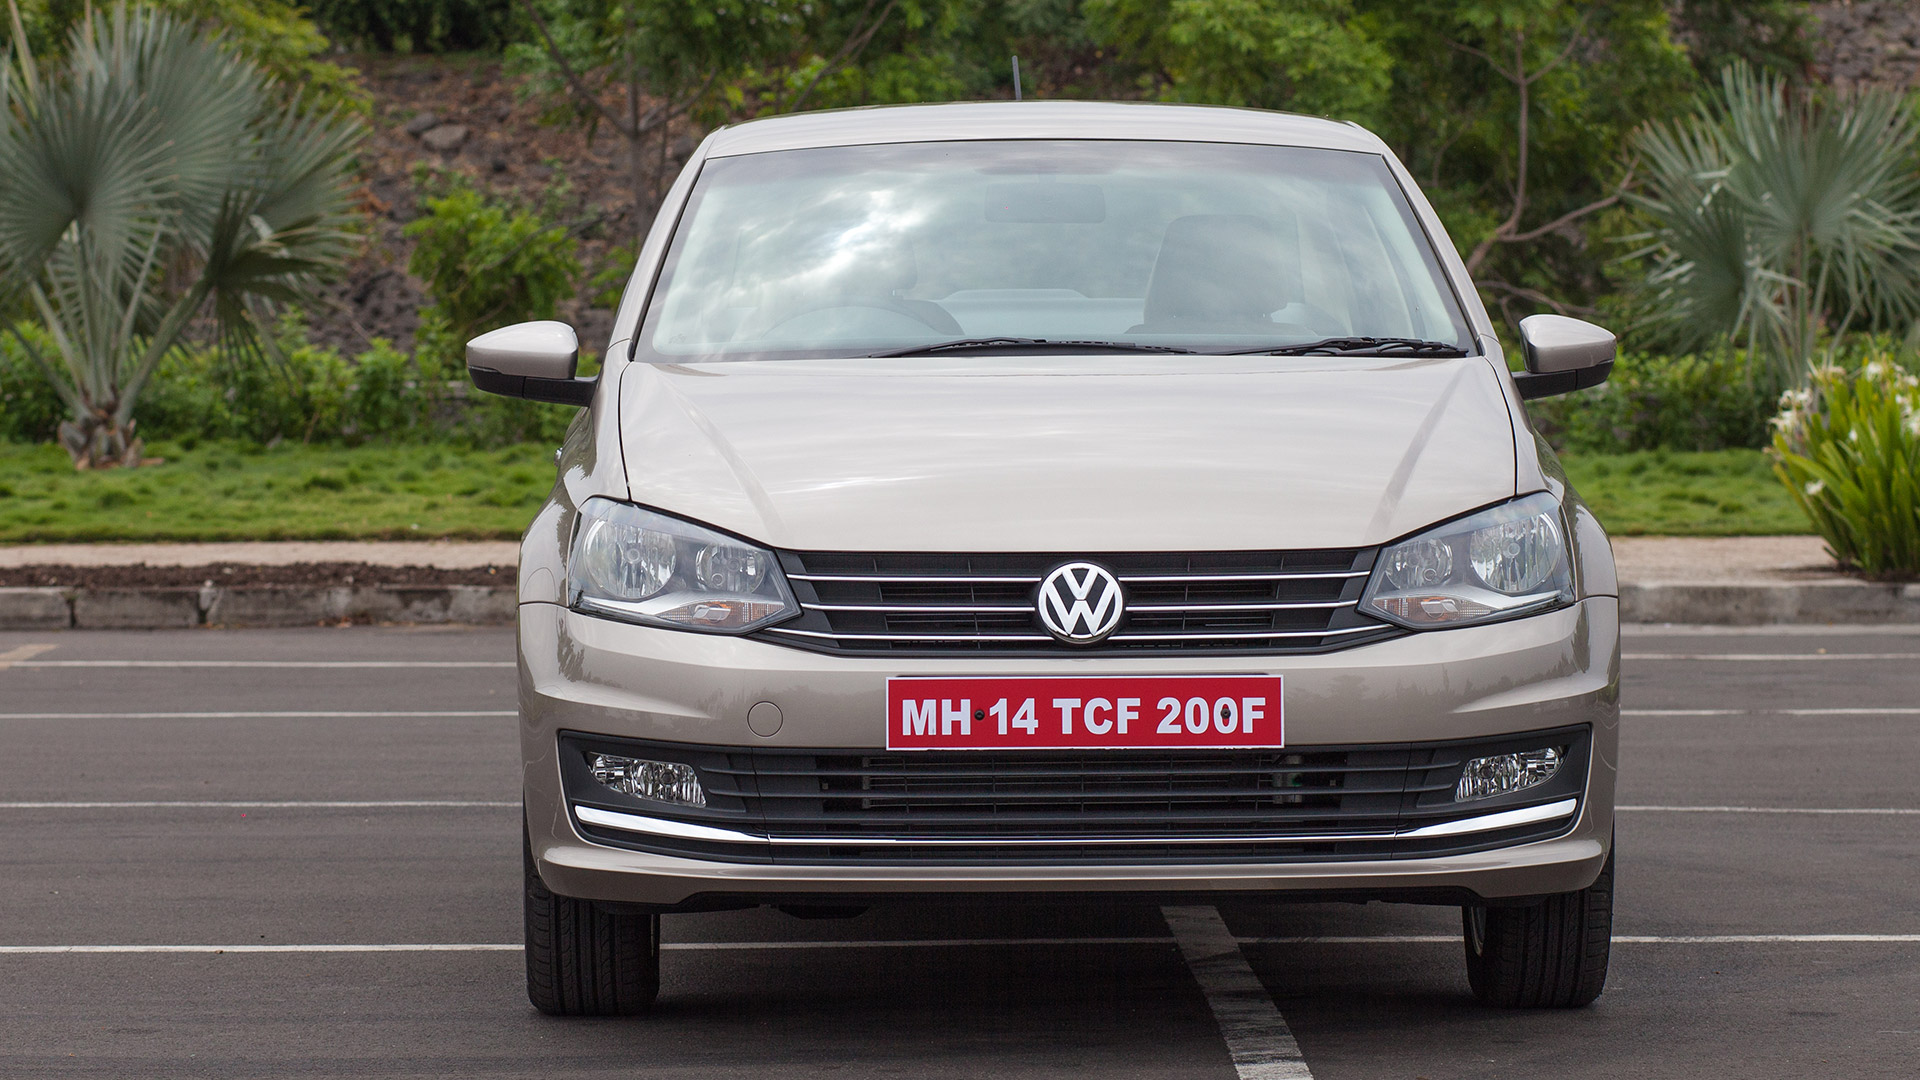 Volkswagen Vento 2015 Compare